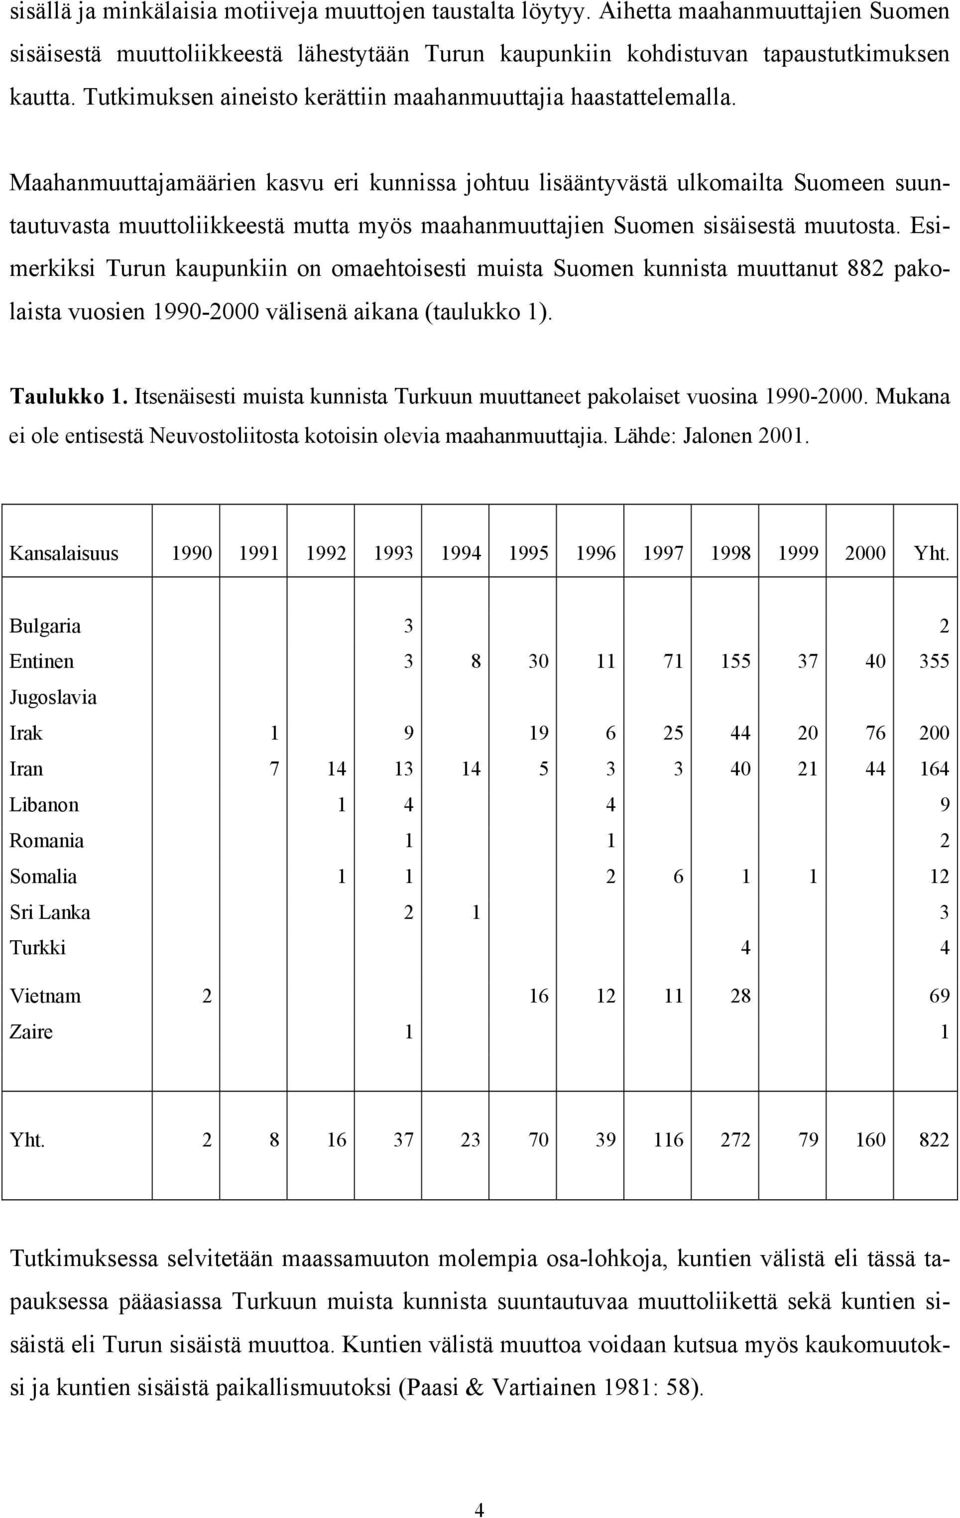 Maahanmuuttajamäärien kasvu eri kunnissa johtuu lisääntyvästä ulkomailta Suomeen suuntautuvasta muuttoliikkeestä mutta myös maahanmuuttajien Suomen sisäisestä muutosta.